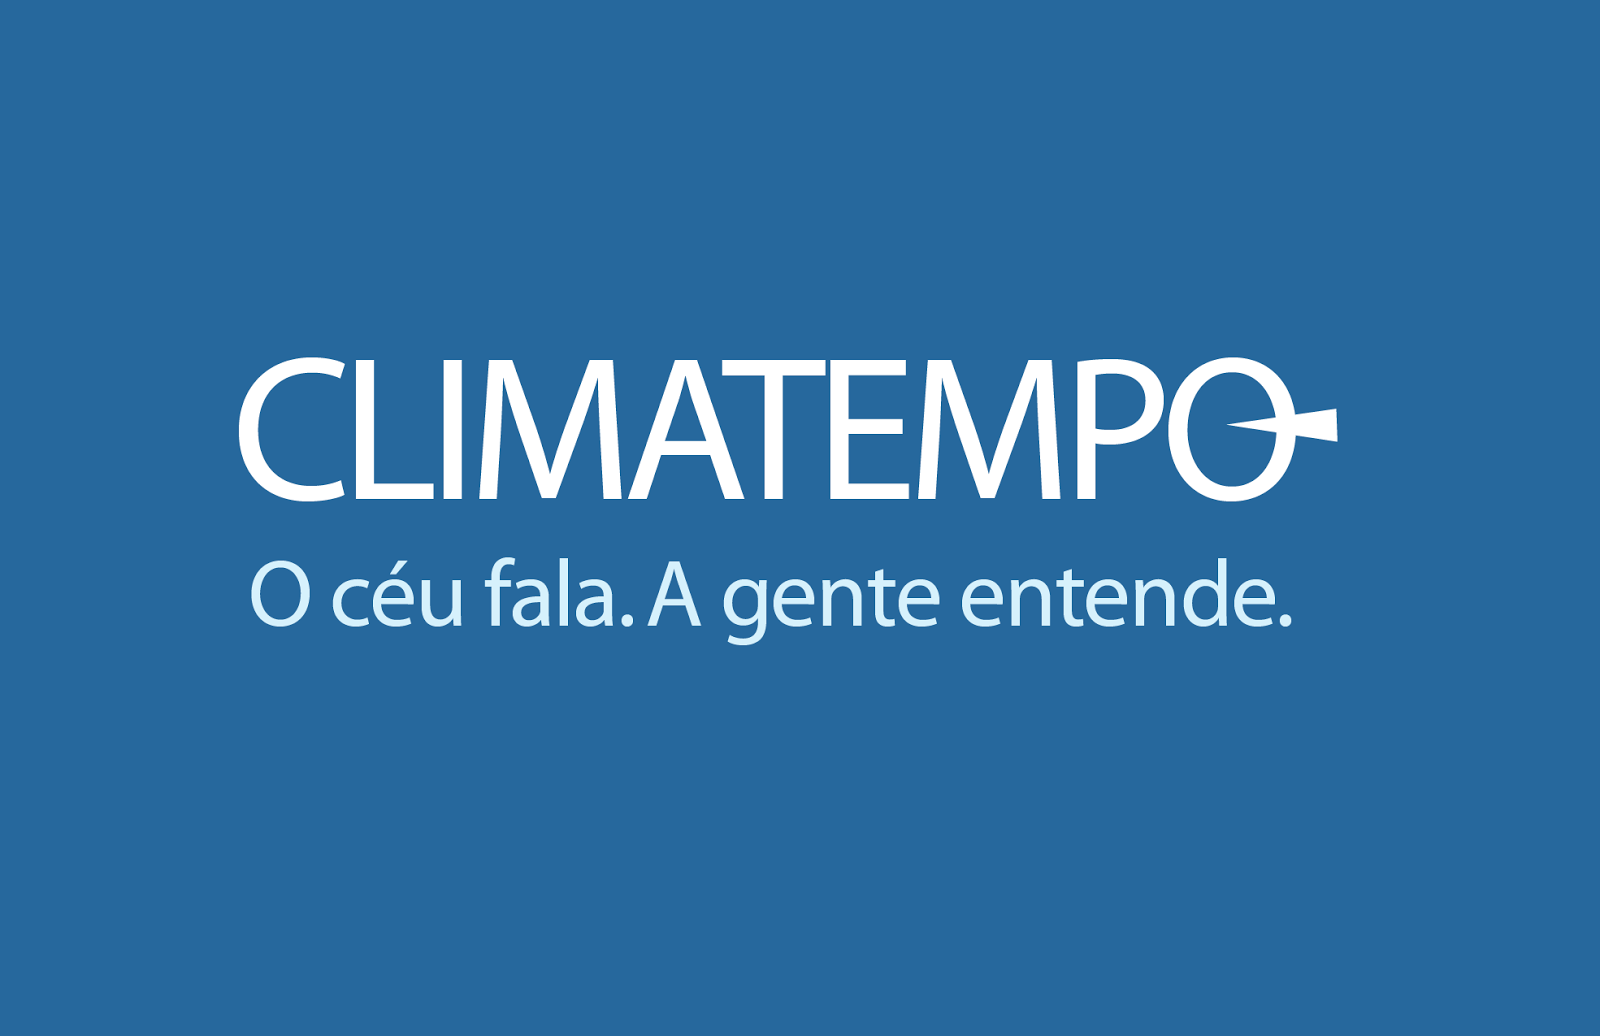 Clima Tempo Conceição do Castelo